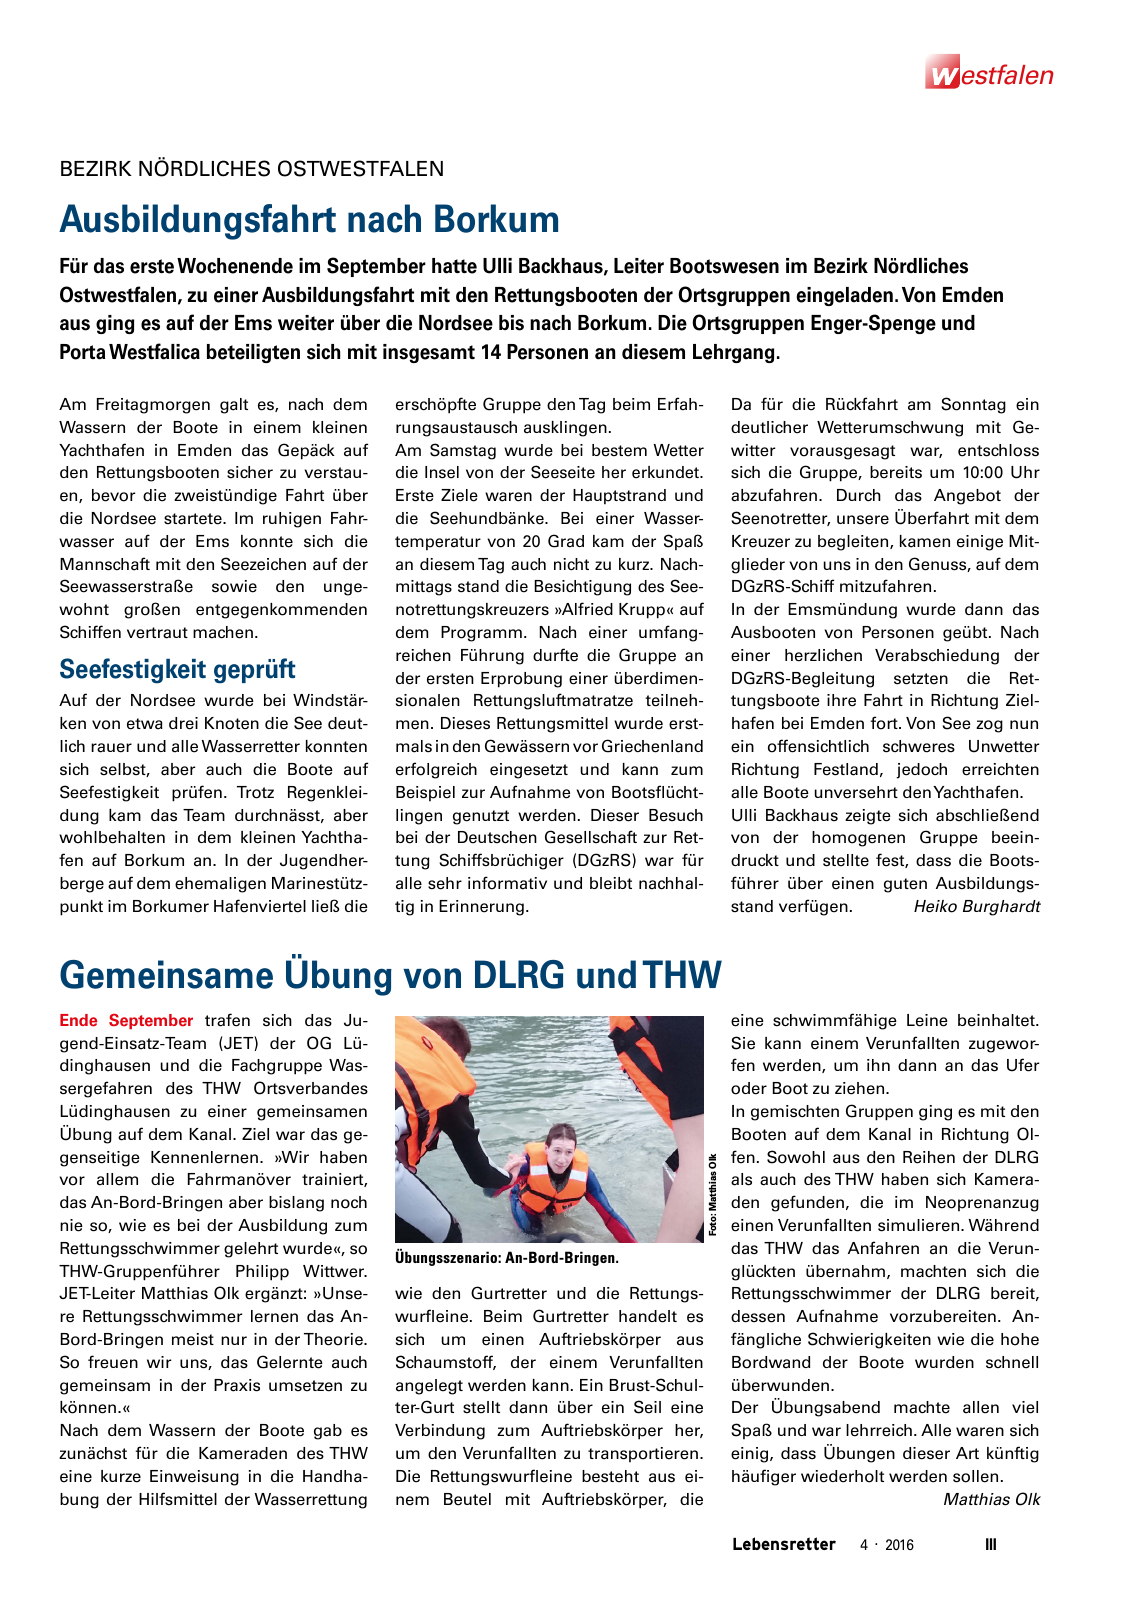 Vorschau Lebensretter 4/2016 - Regionalausgabe Westfalen Seite 5